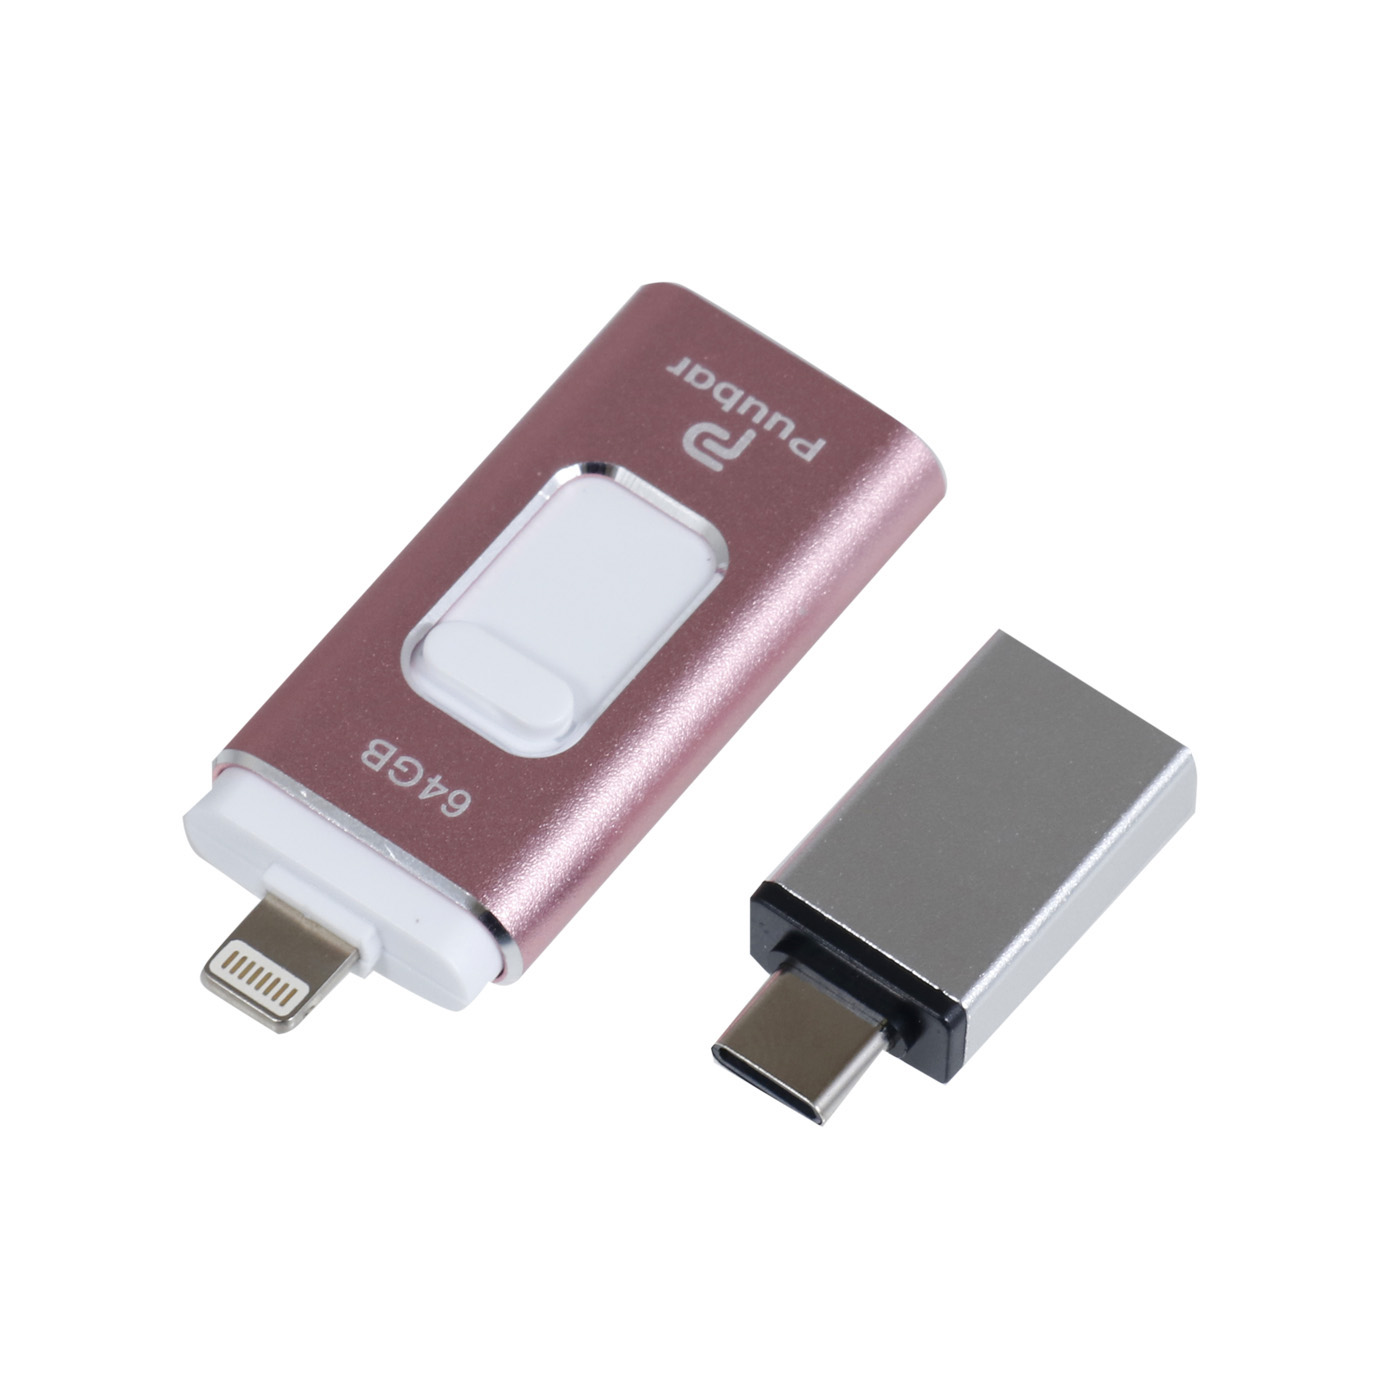 iPhone USBメモリー 64GB 最新版 フラッシュドライブ 4in1 3.0高速Phone usbメモリー フラッシュドライブ アイフォン用メモリ IOS